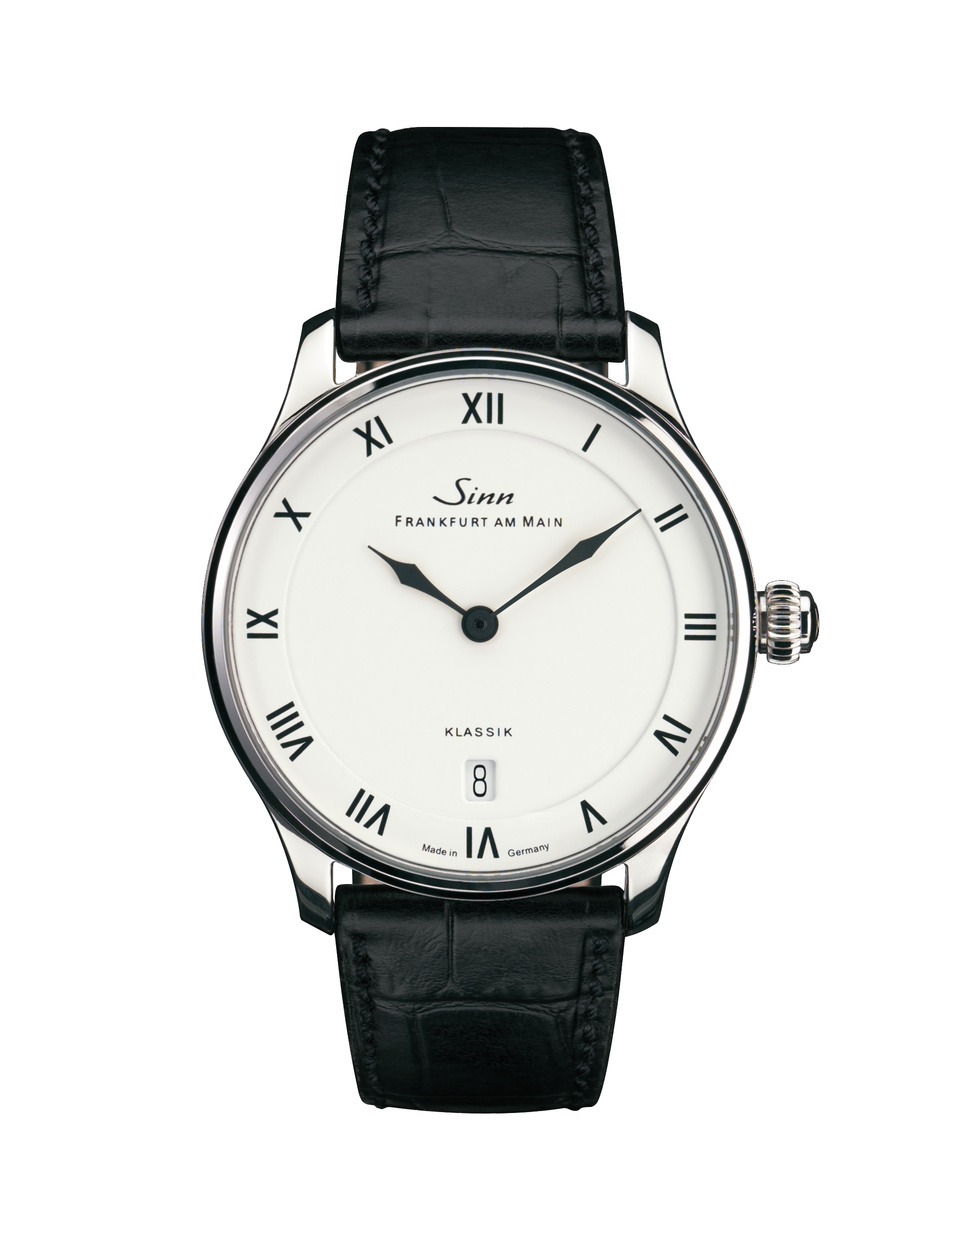 longines - Et la prochaine ? Une montre "habillée", cadran blanc : Stowa, Longines, Cartier - Page 2 X1736-10